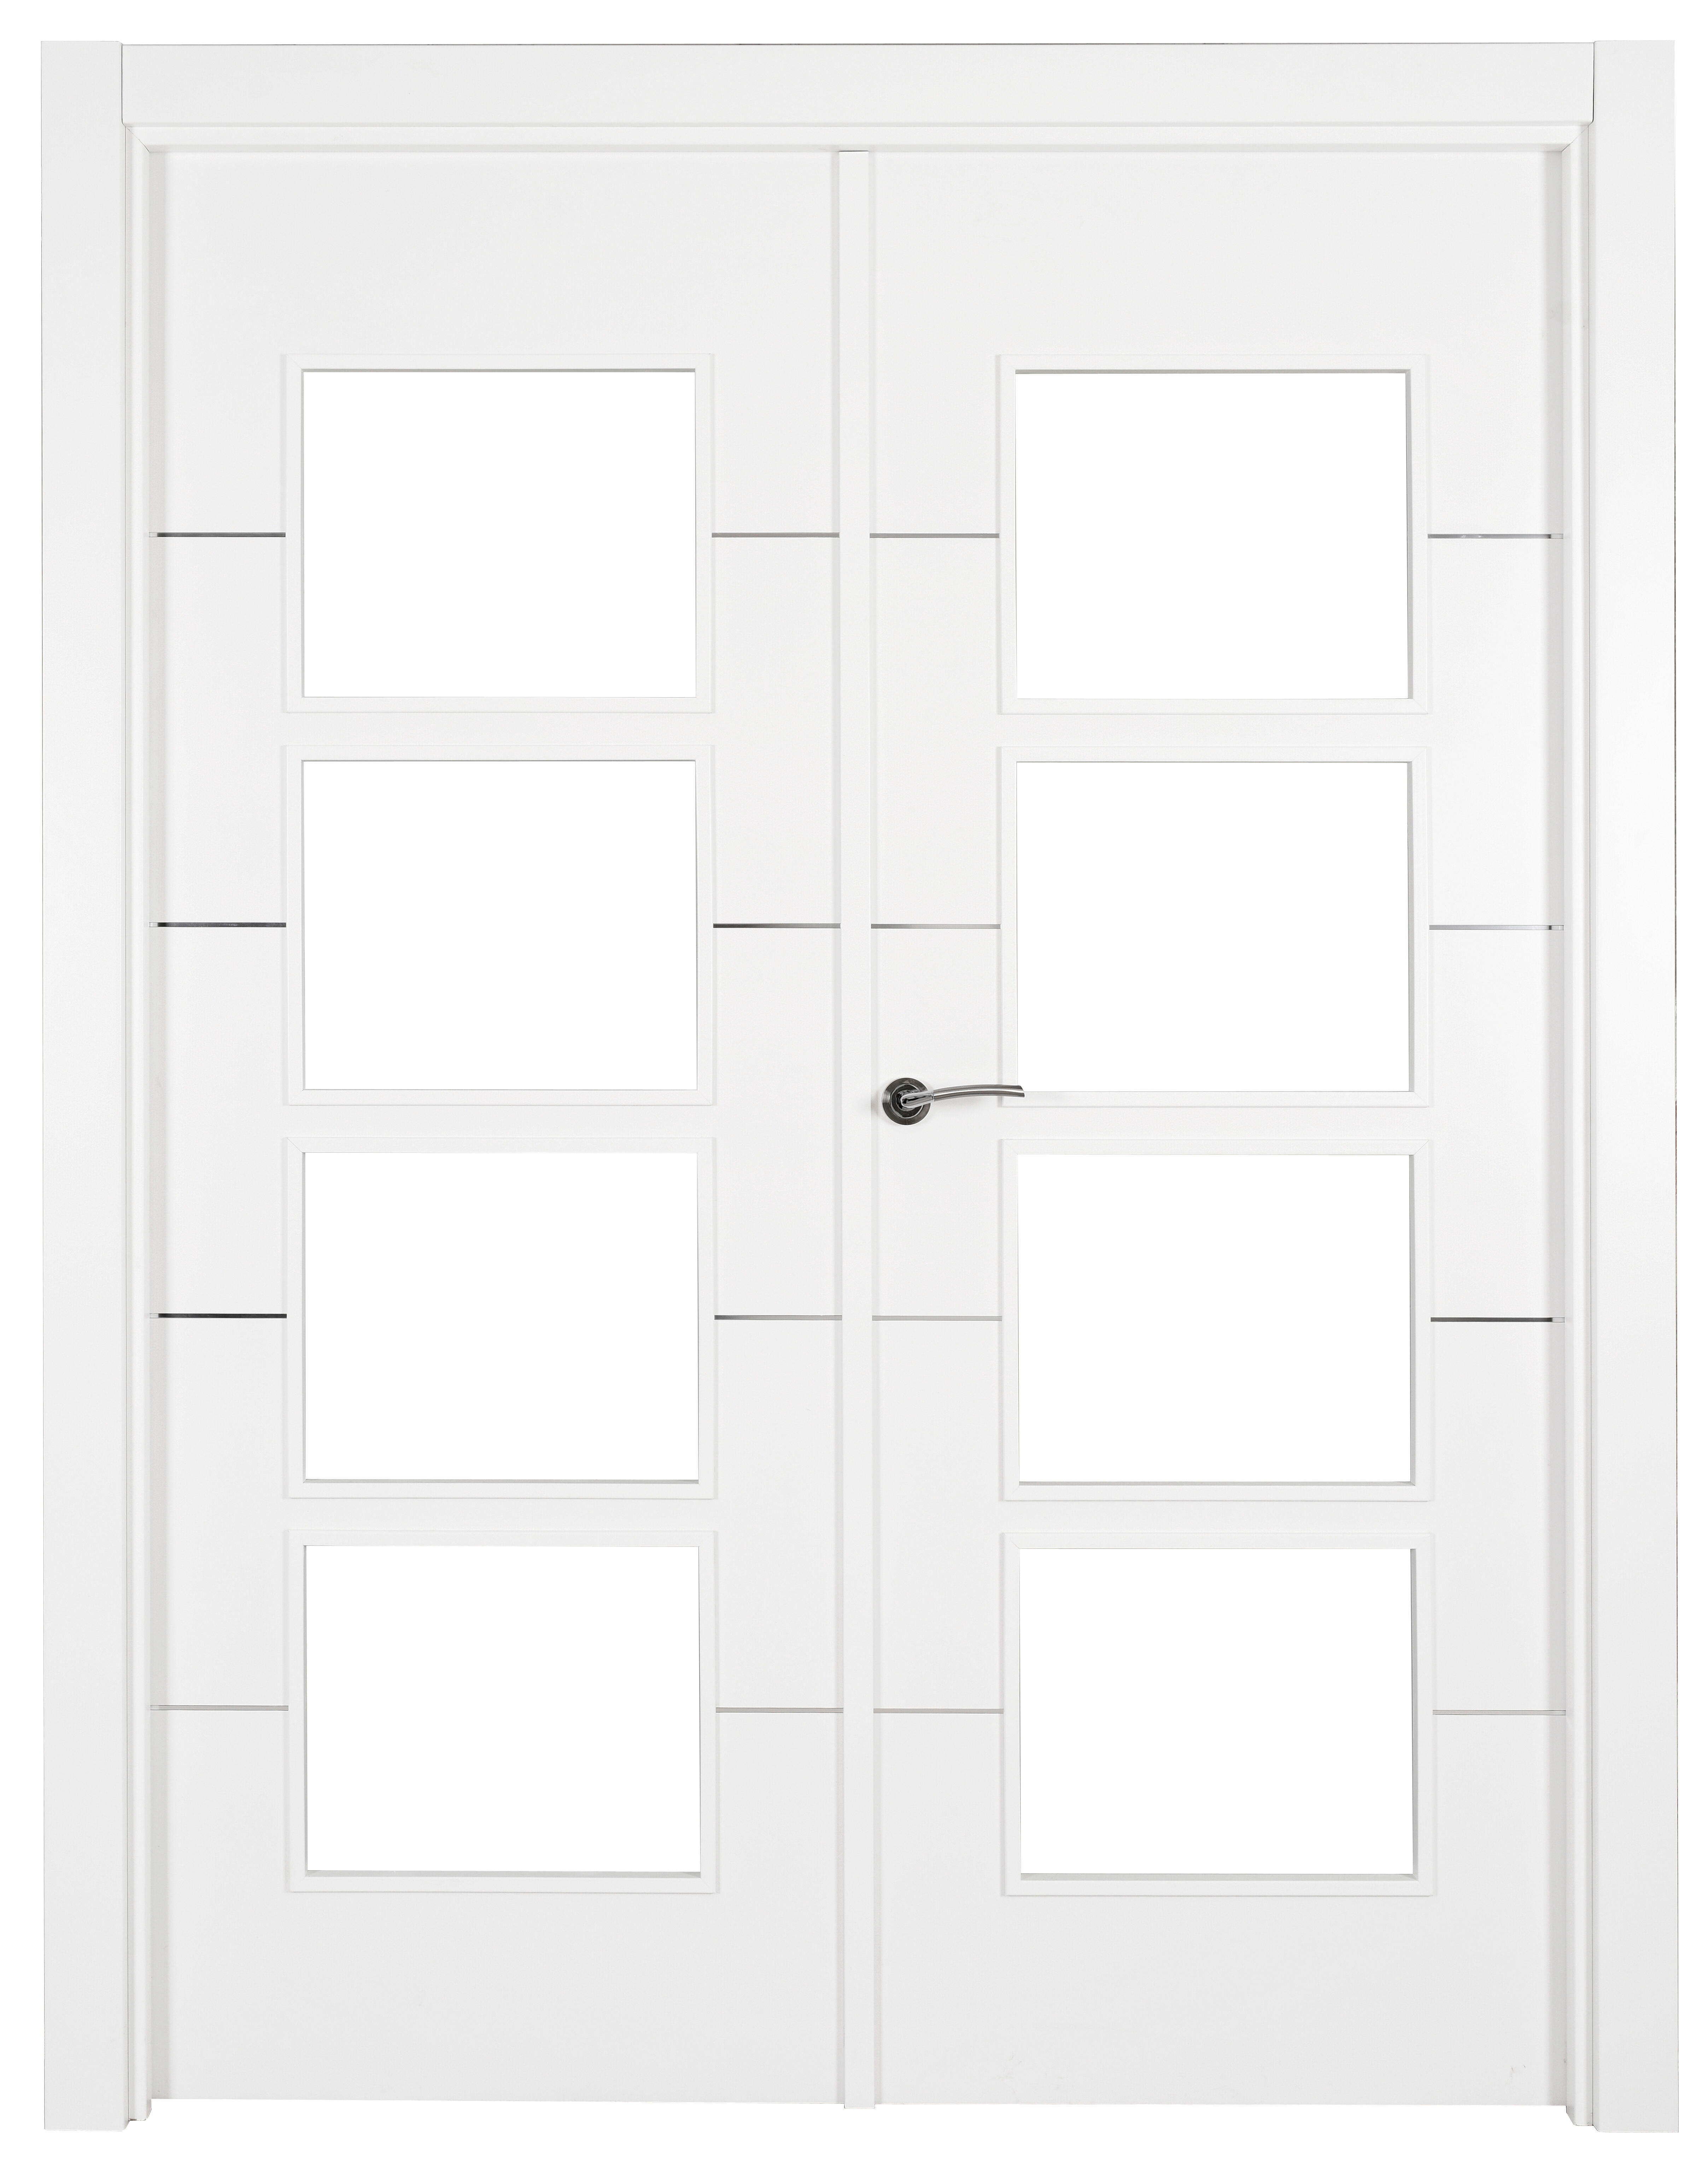 Puerta paris premium blanco apertura derecha con cristal 9x145cm